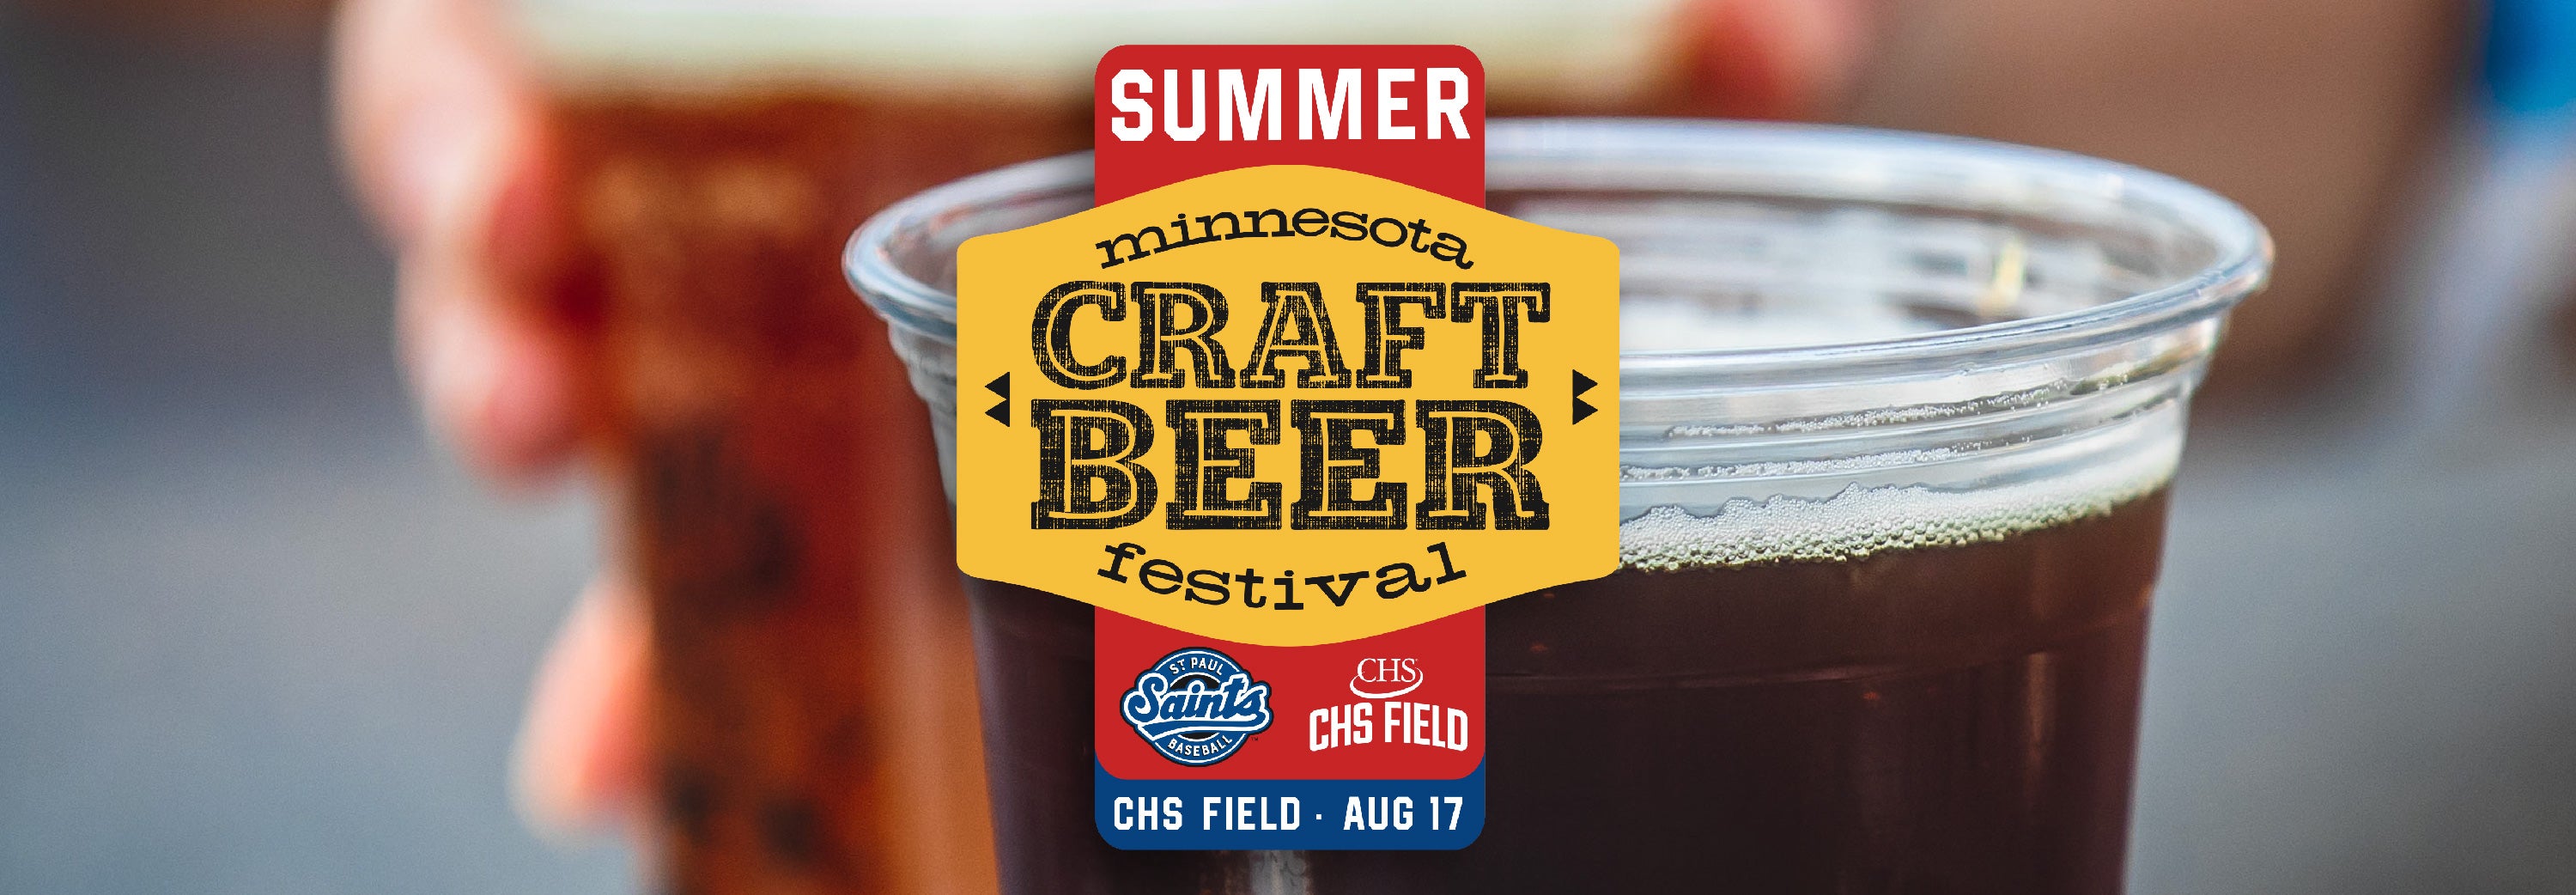 MN Summer Craft Beer Festival